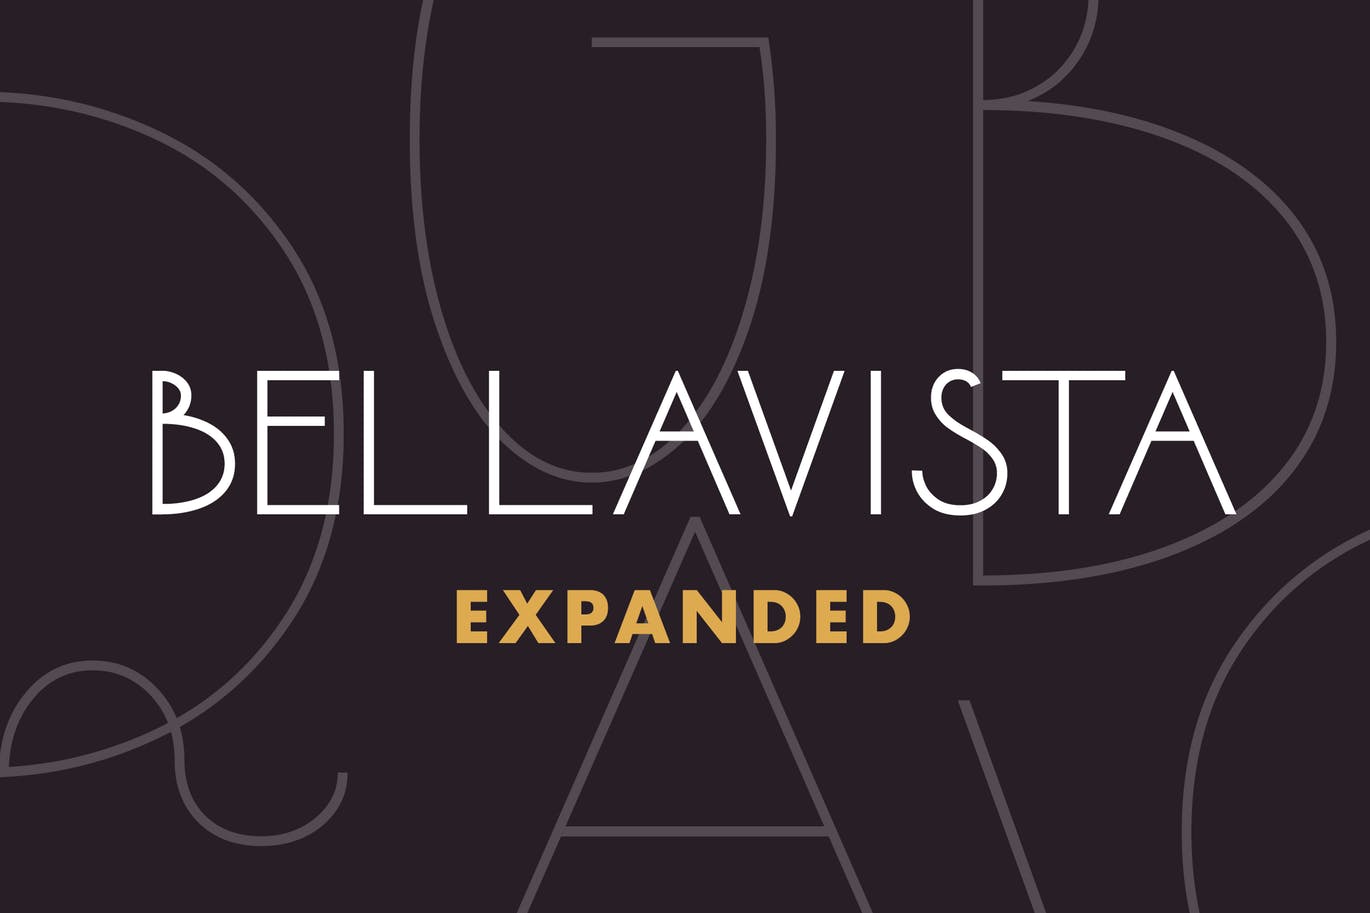 装饰艺术英文无衬线字体-扩展间距版本 Bellavista Expanded插图